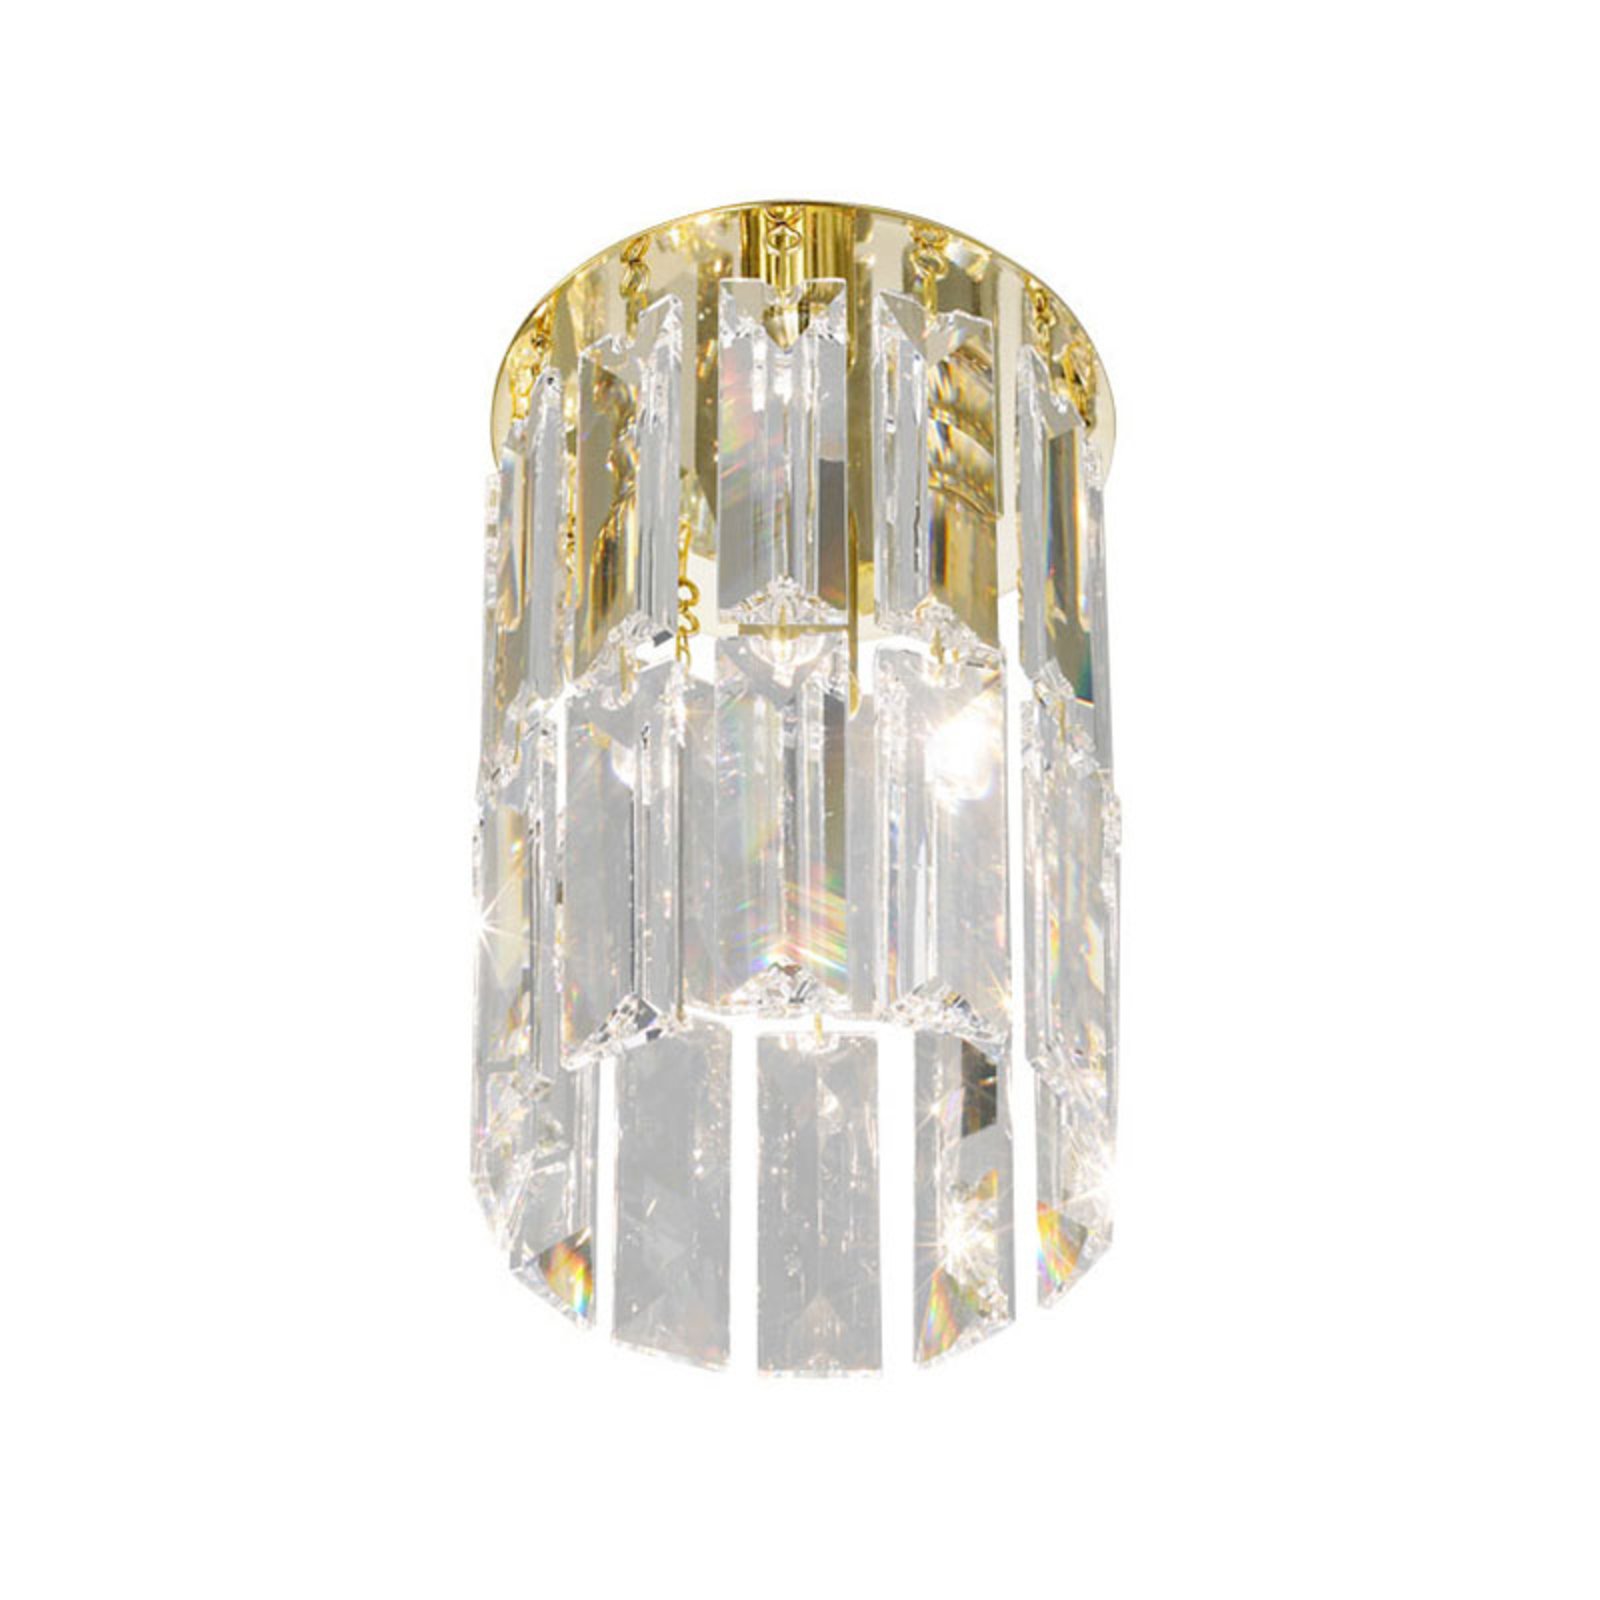 KOLARZ Prisma ceiling lamp, crystal/gold 24 carat